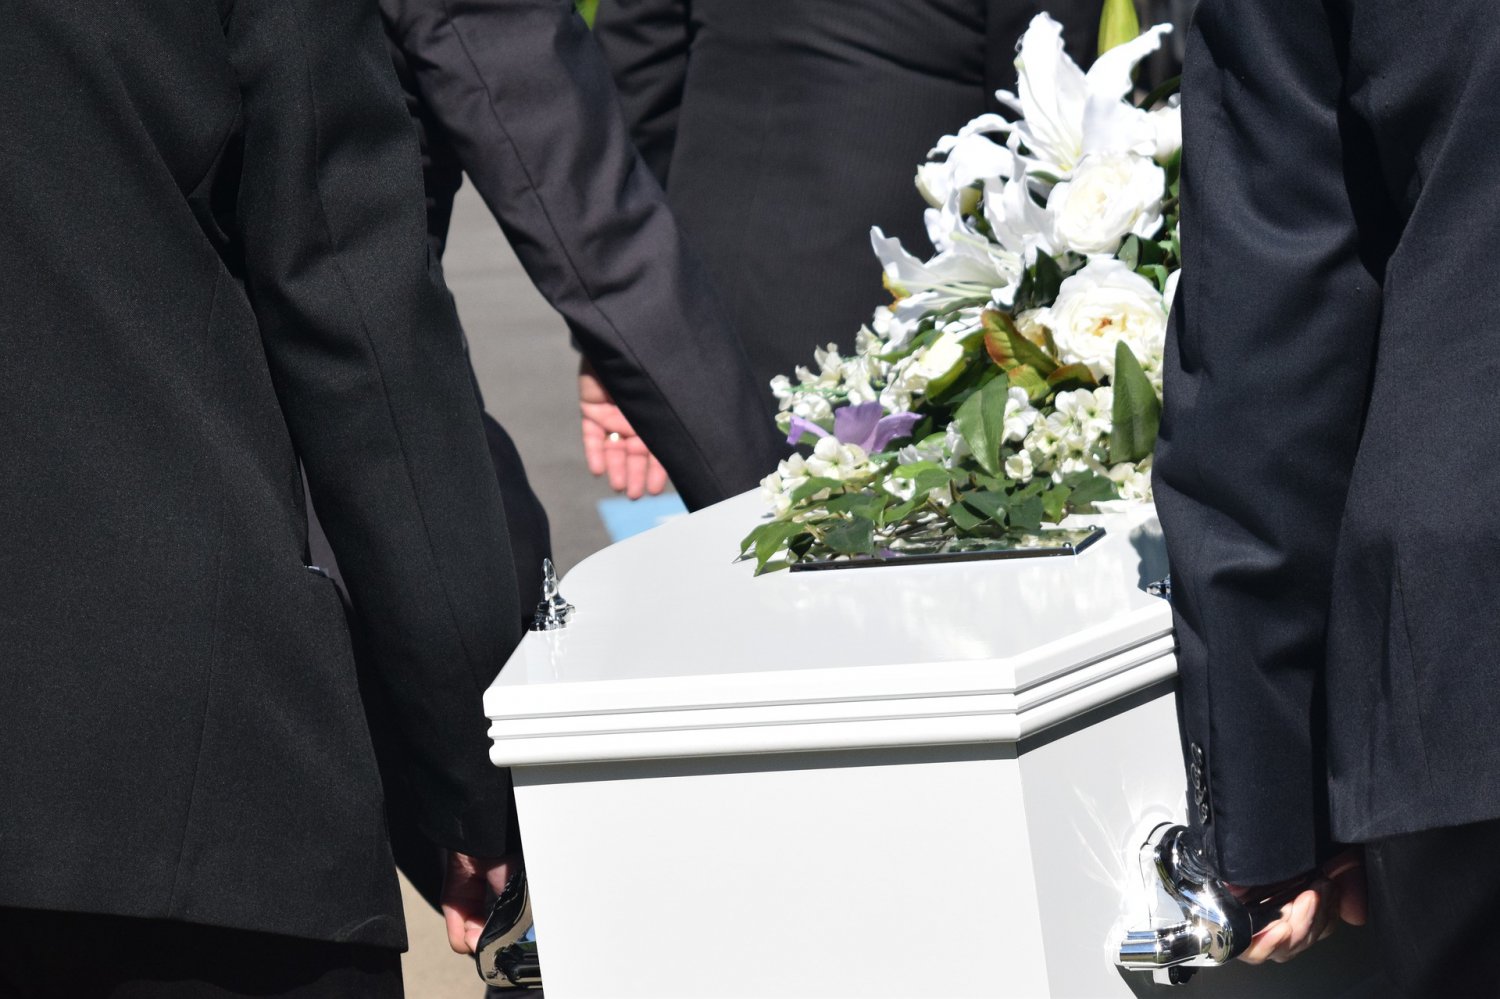 Объявлен сбор денег на похороны убитых в Антоповке